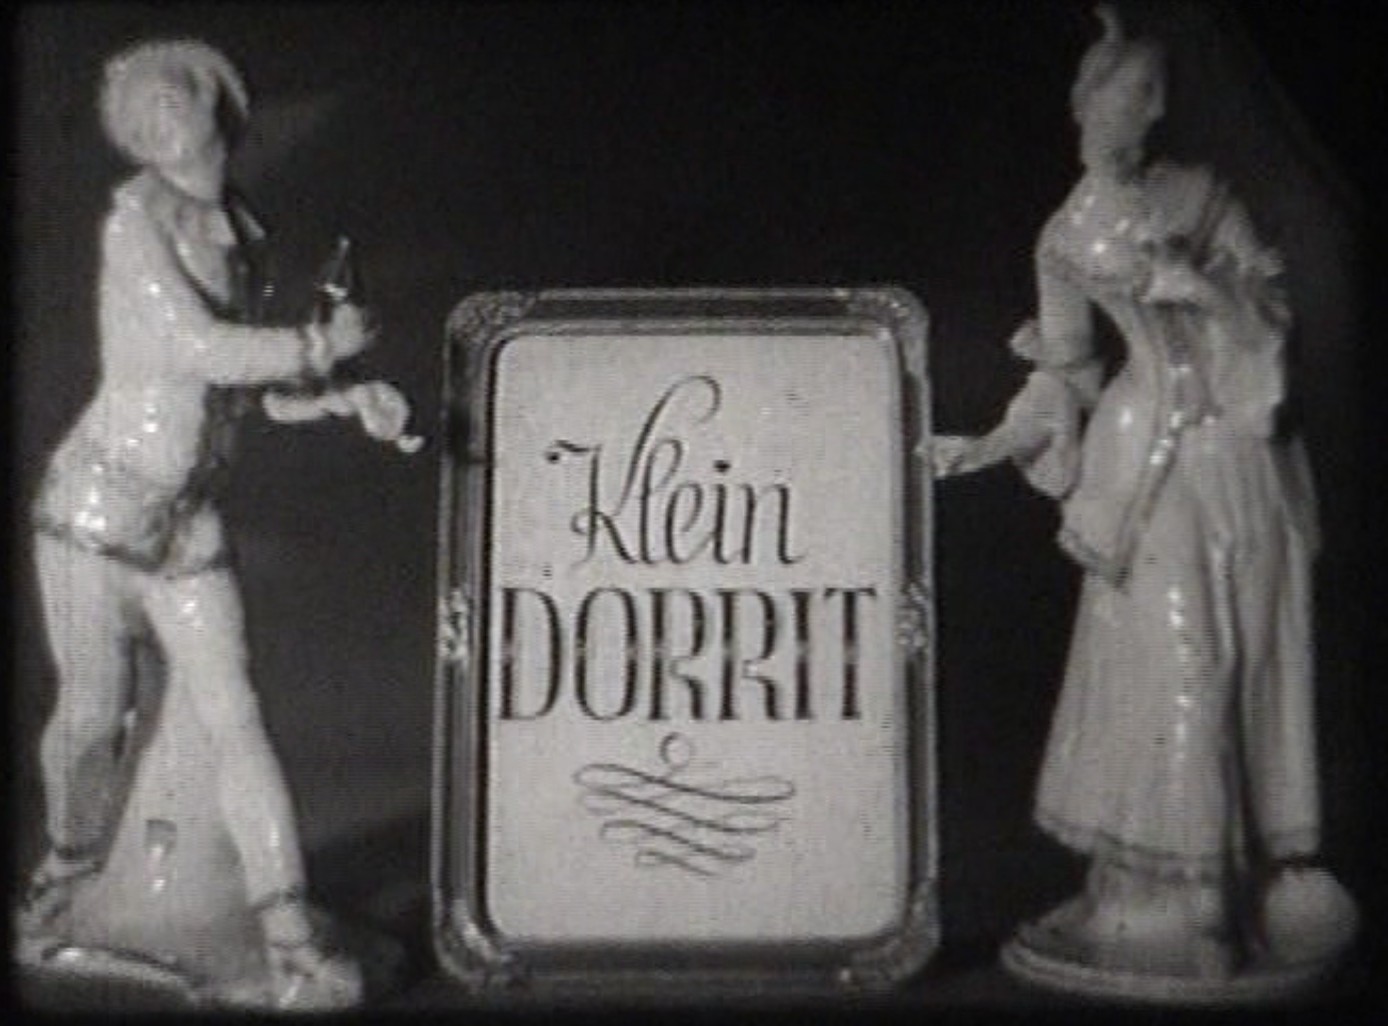 KLEIN DORITT 1934